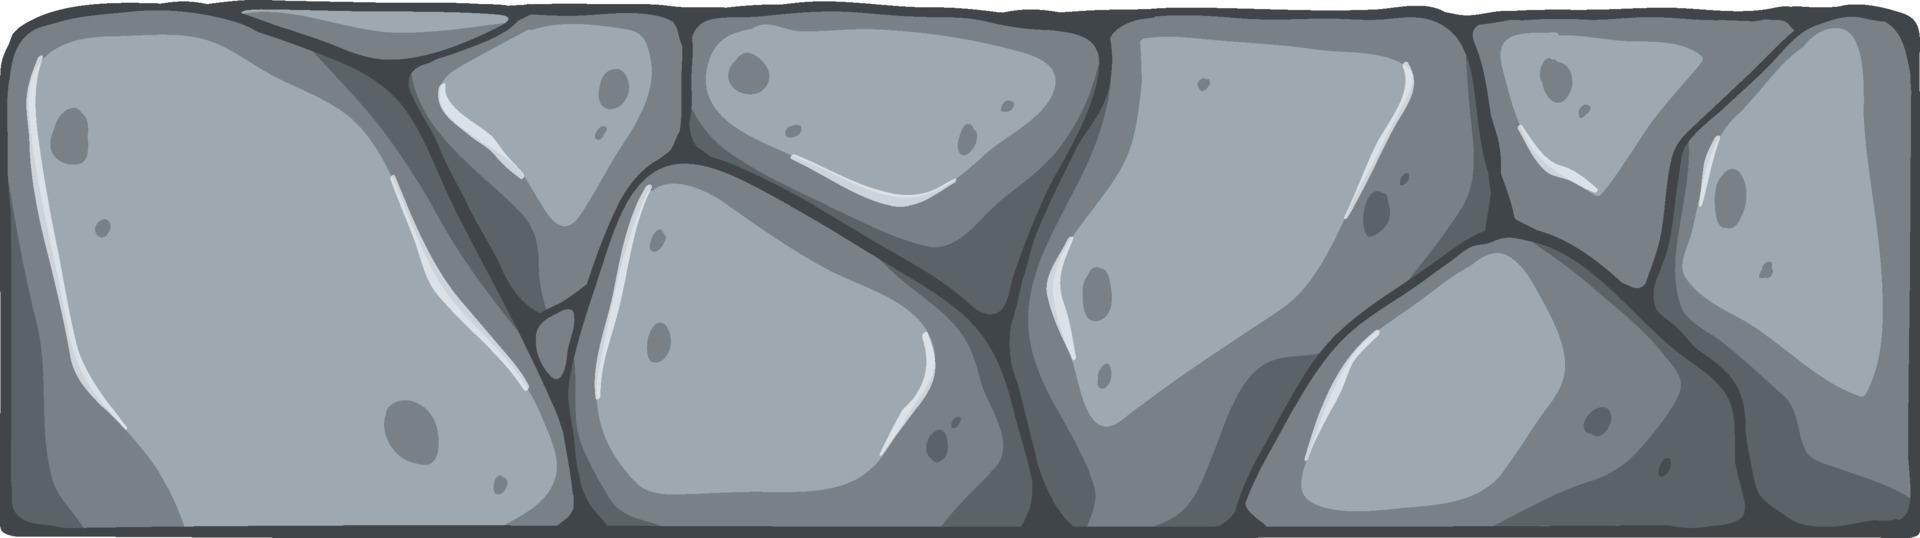 geïsoleerde stenen baksteen in cartoonstijl vector